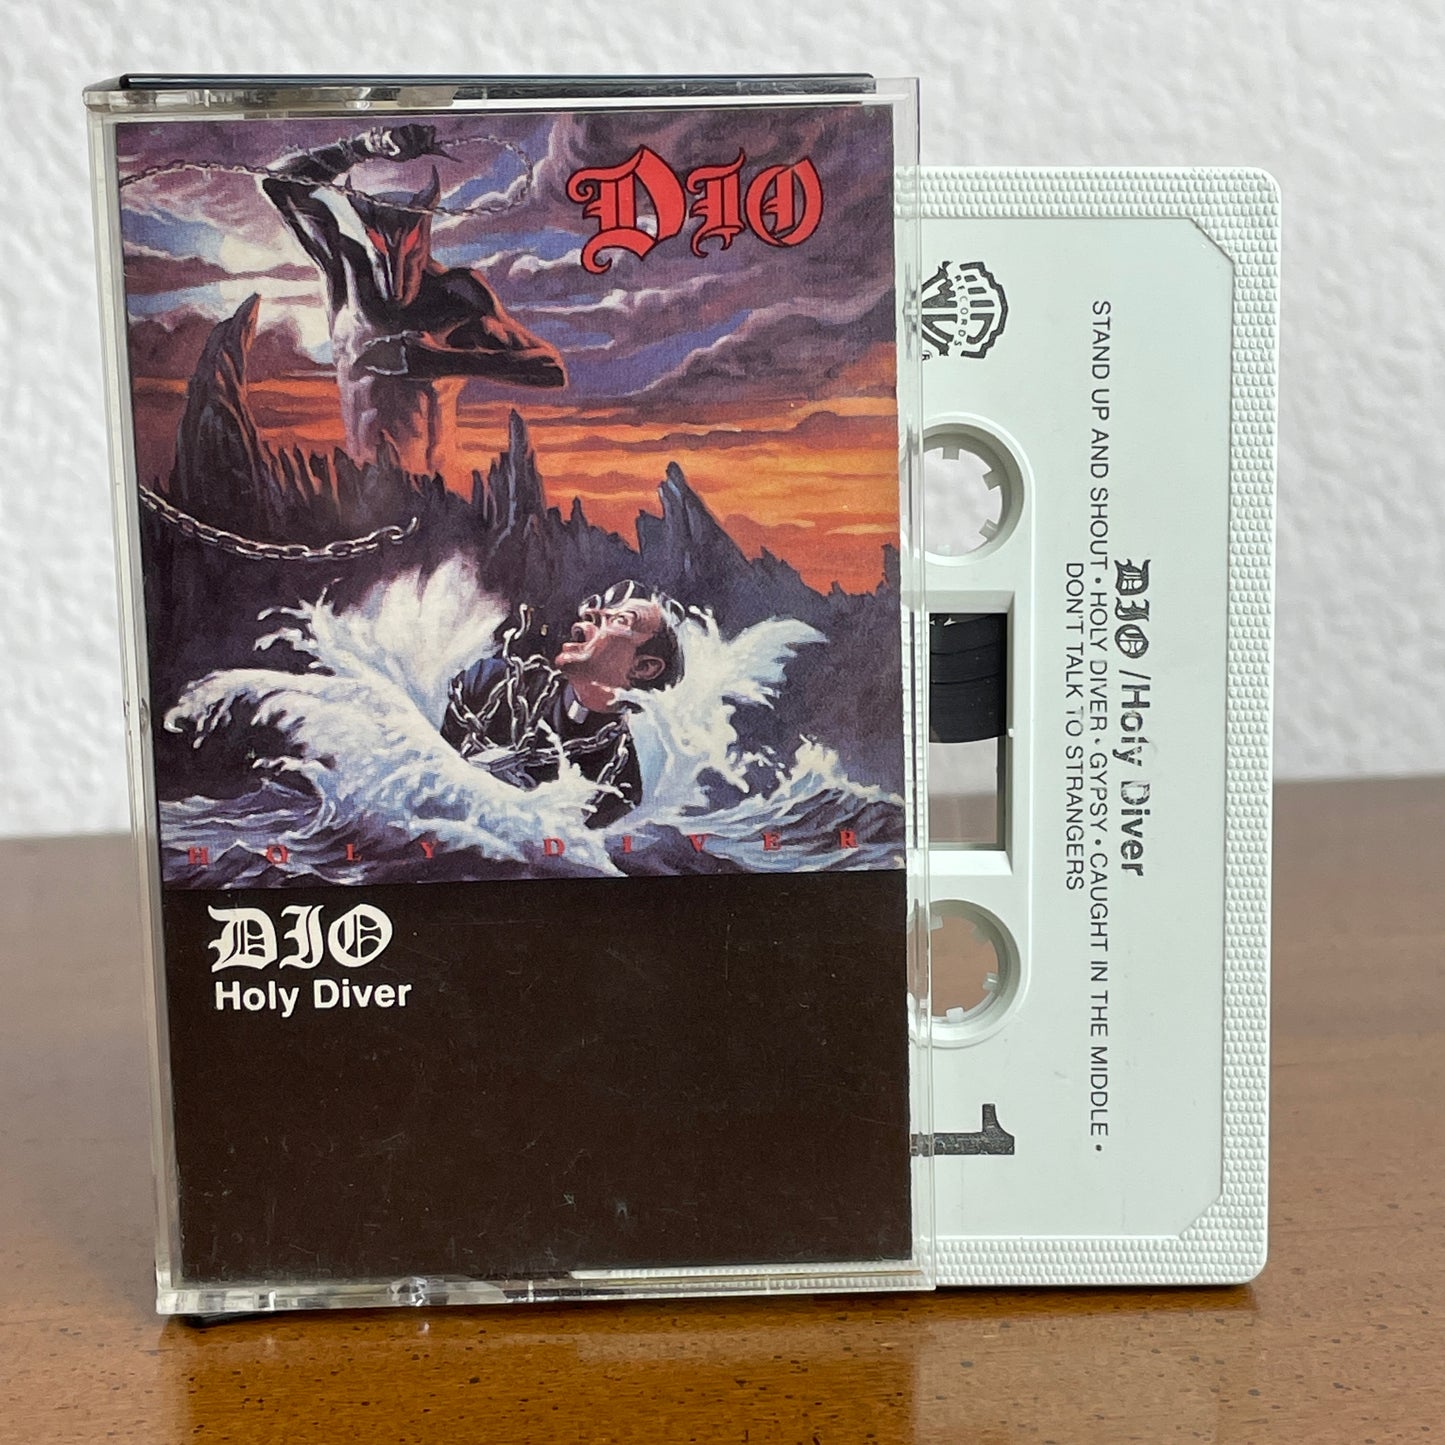 Dio - Holy Diver original cassette tape